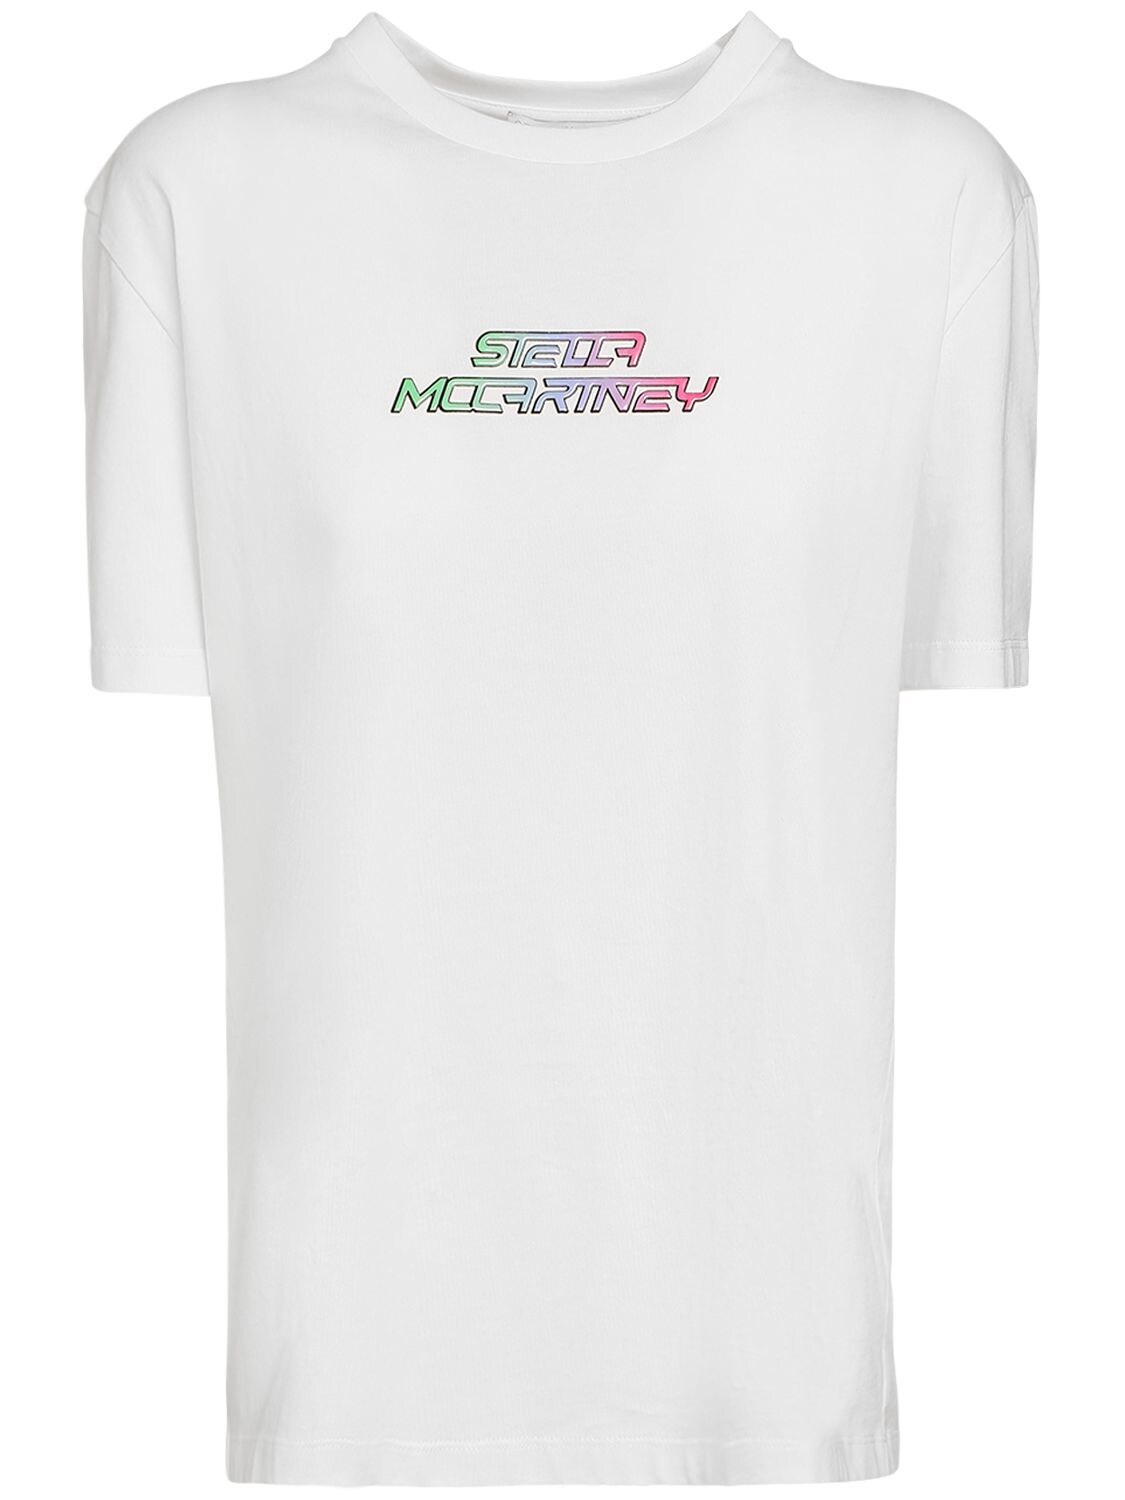 T-shirt Aus Baumwolle Mit Logodruck - STELLA MCCARTNEY - Modalova